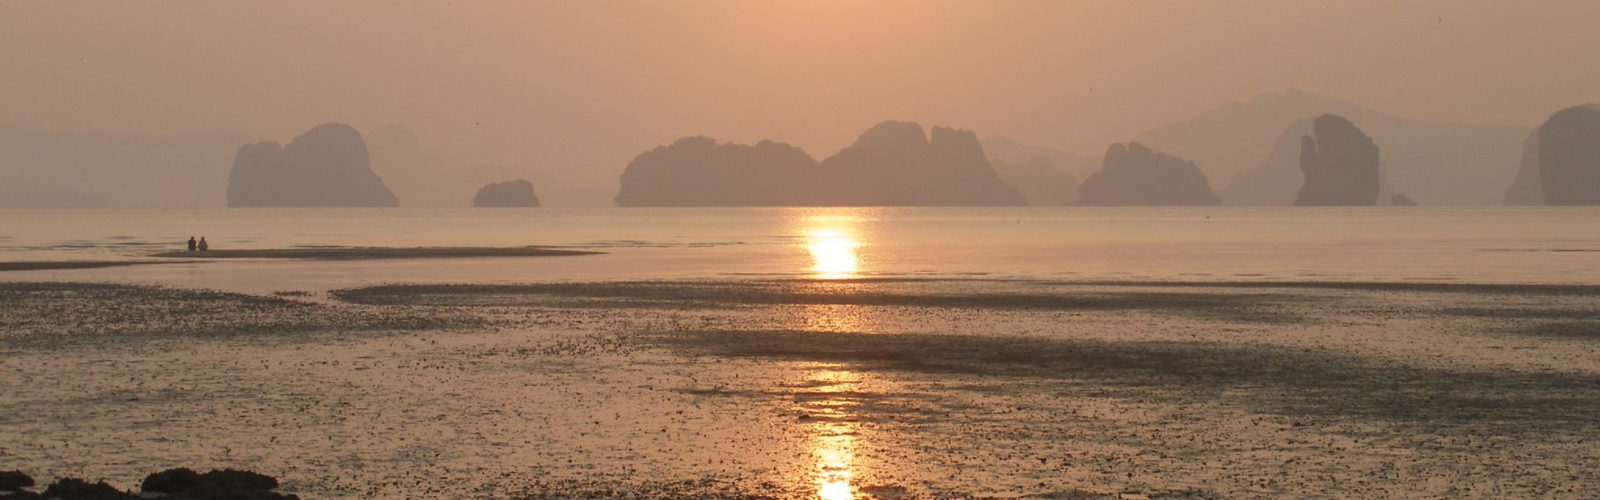 koh-yao-noi-sunset-thailand